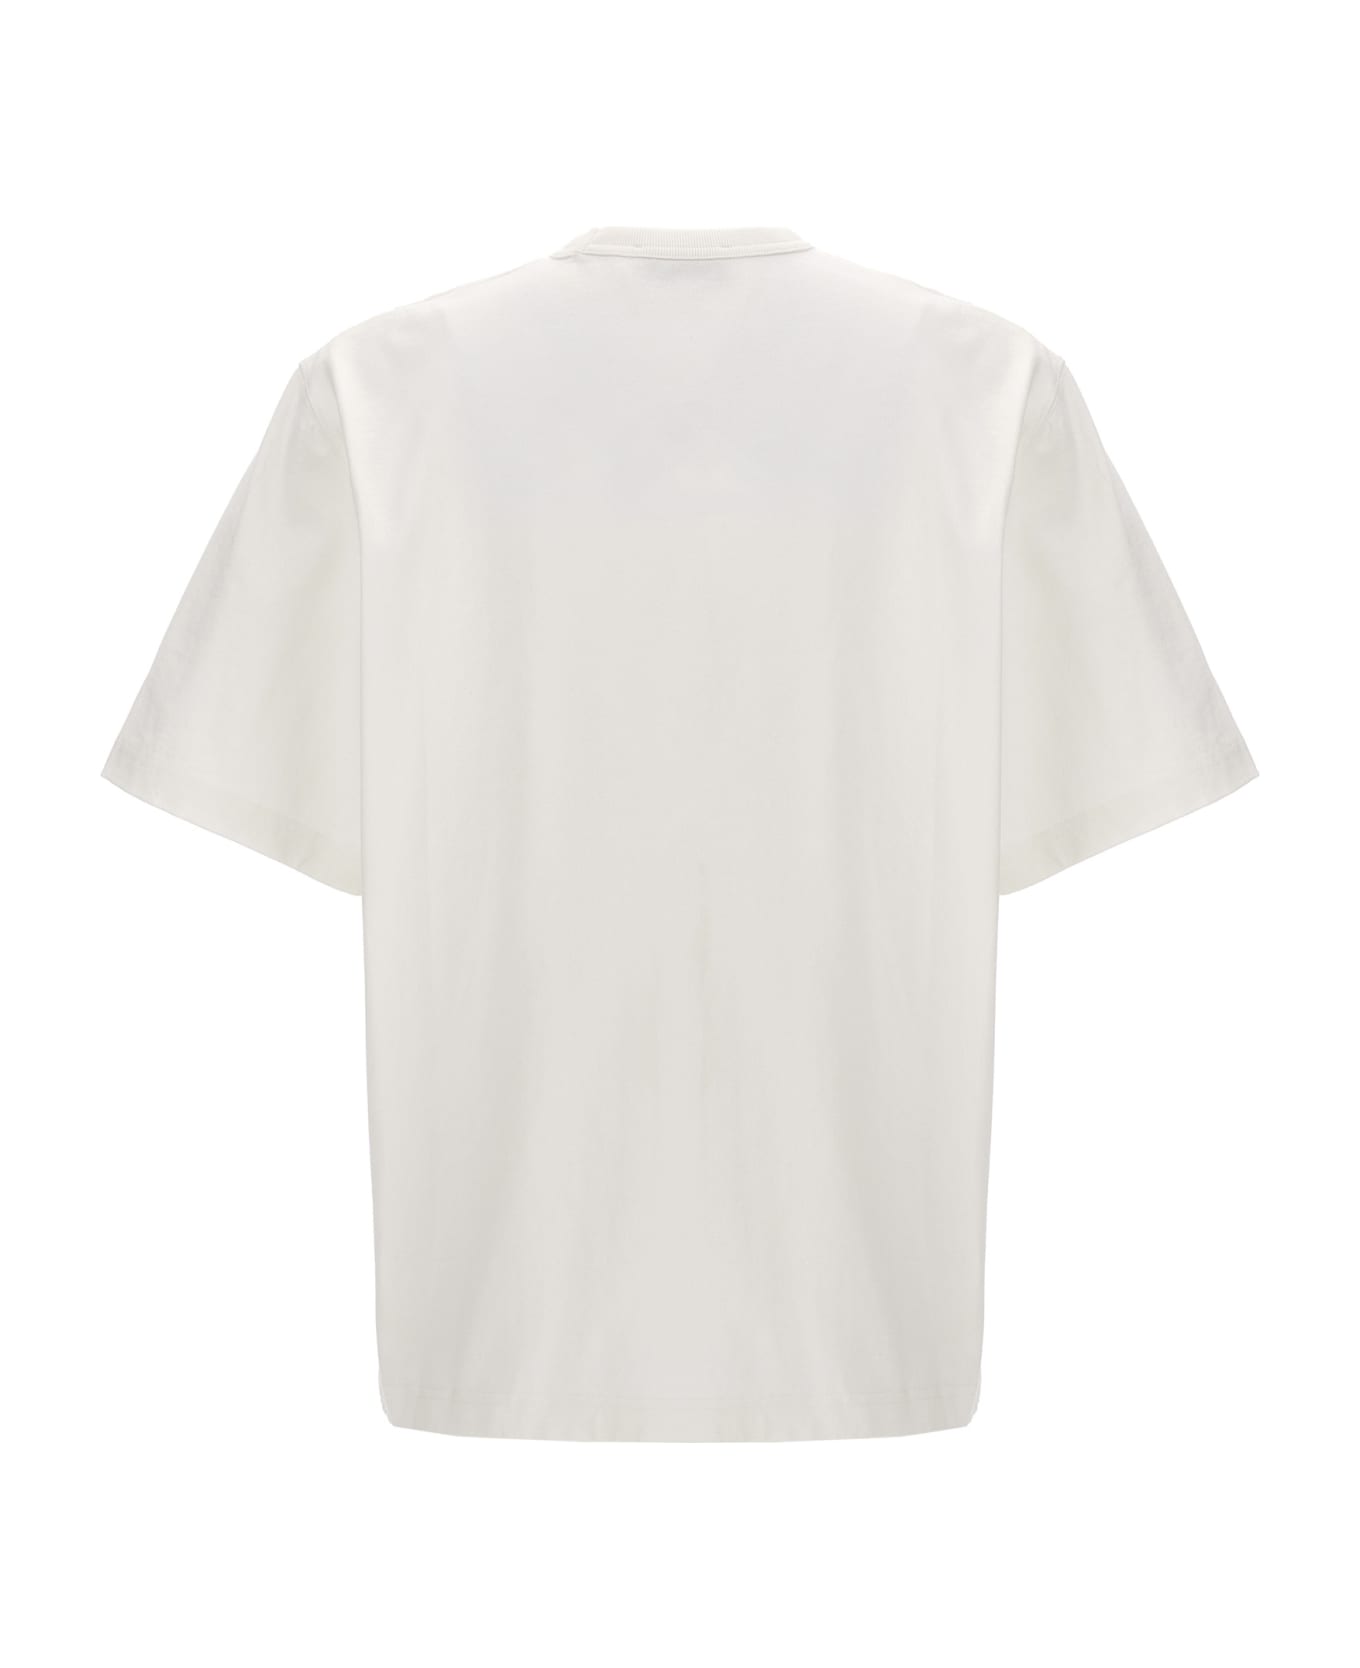 Studio Nicholson Logo T-shirt - White